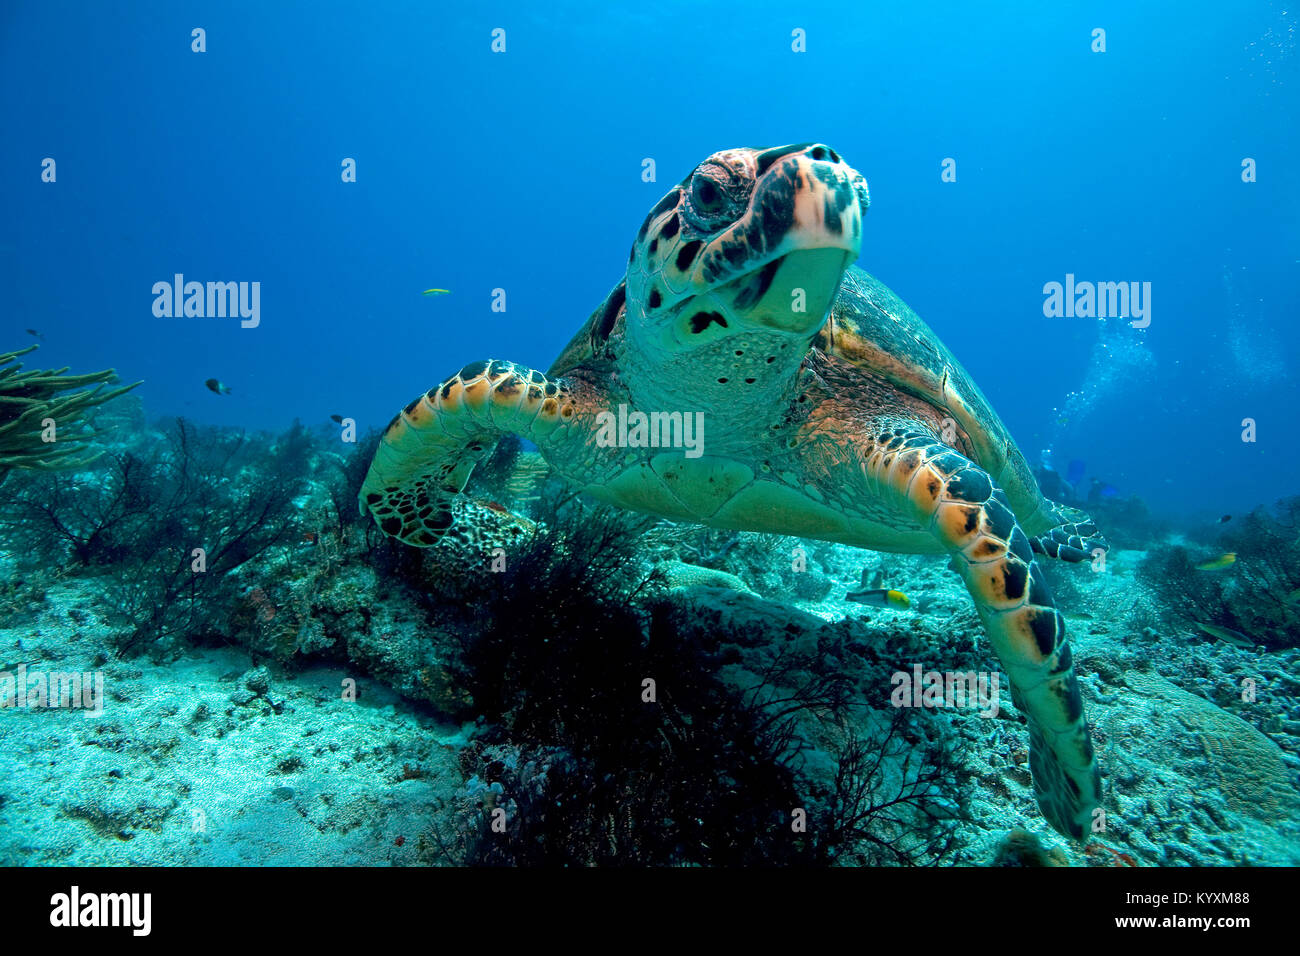 La tortuga carey (Eretmochelys imbricata), Playa del Carmen, la península de Yucatán, México, el Caribe Foto de stock